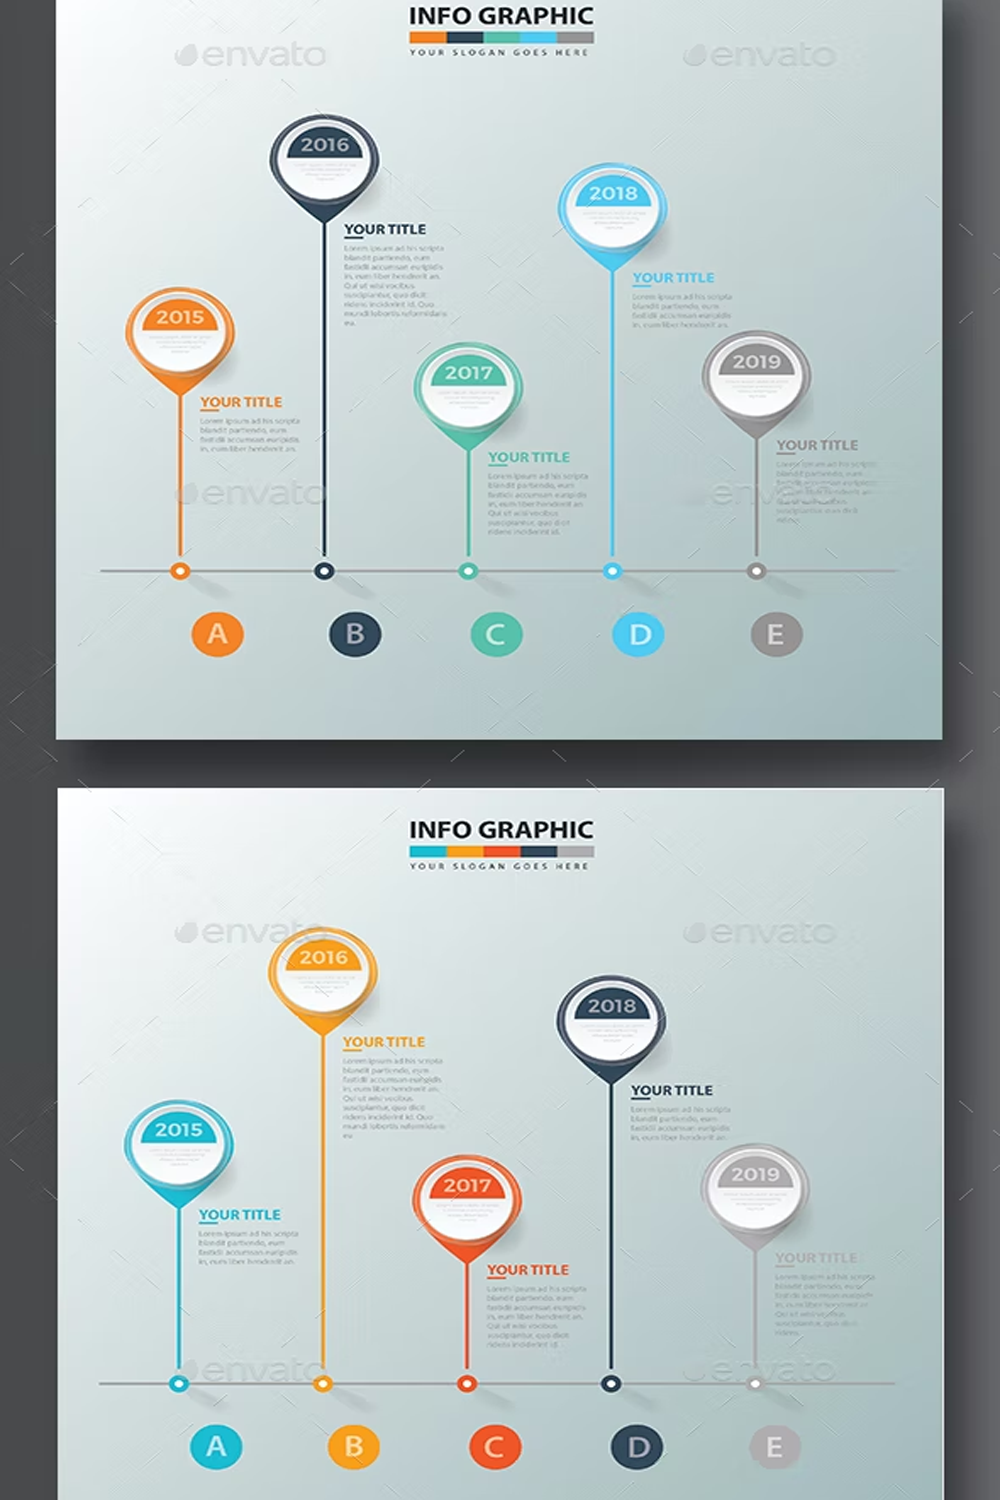 Illustrations timeline infographic design of pinterest.